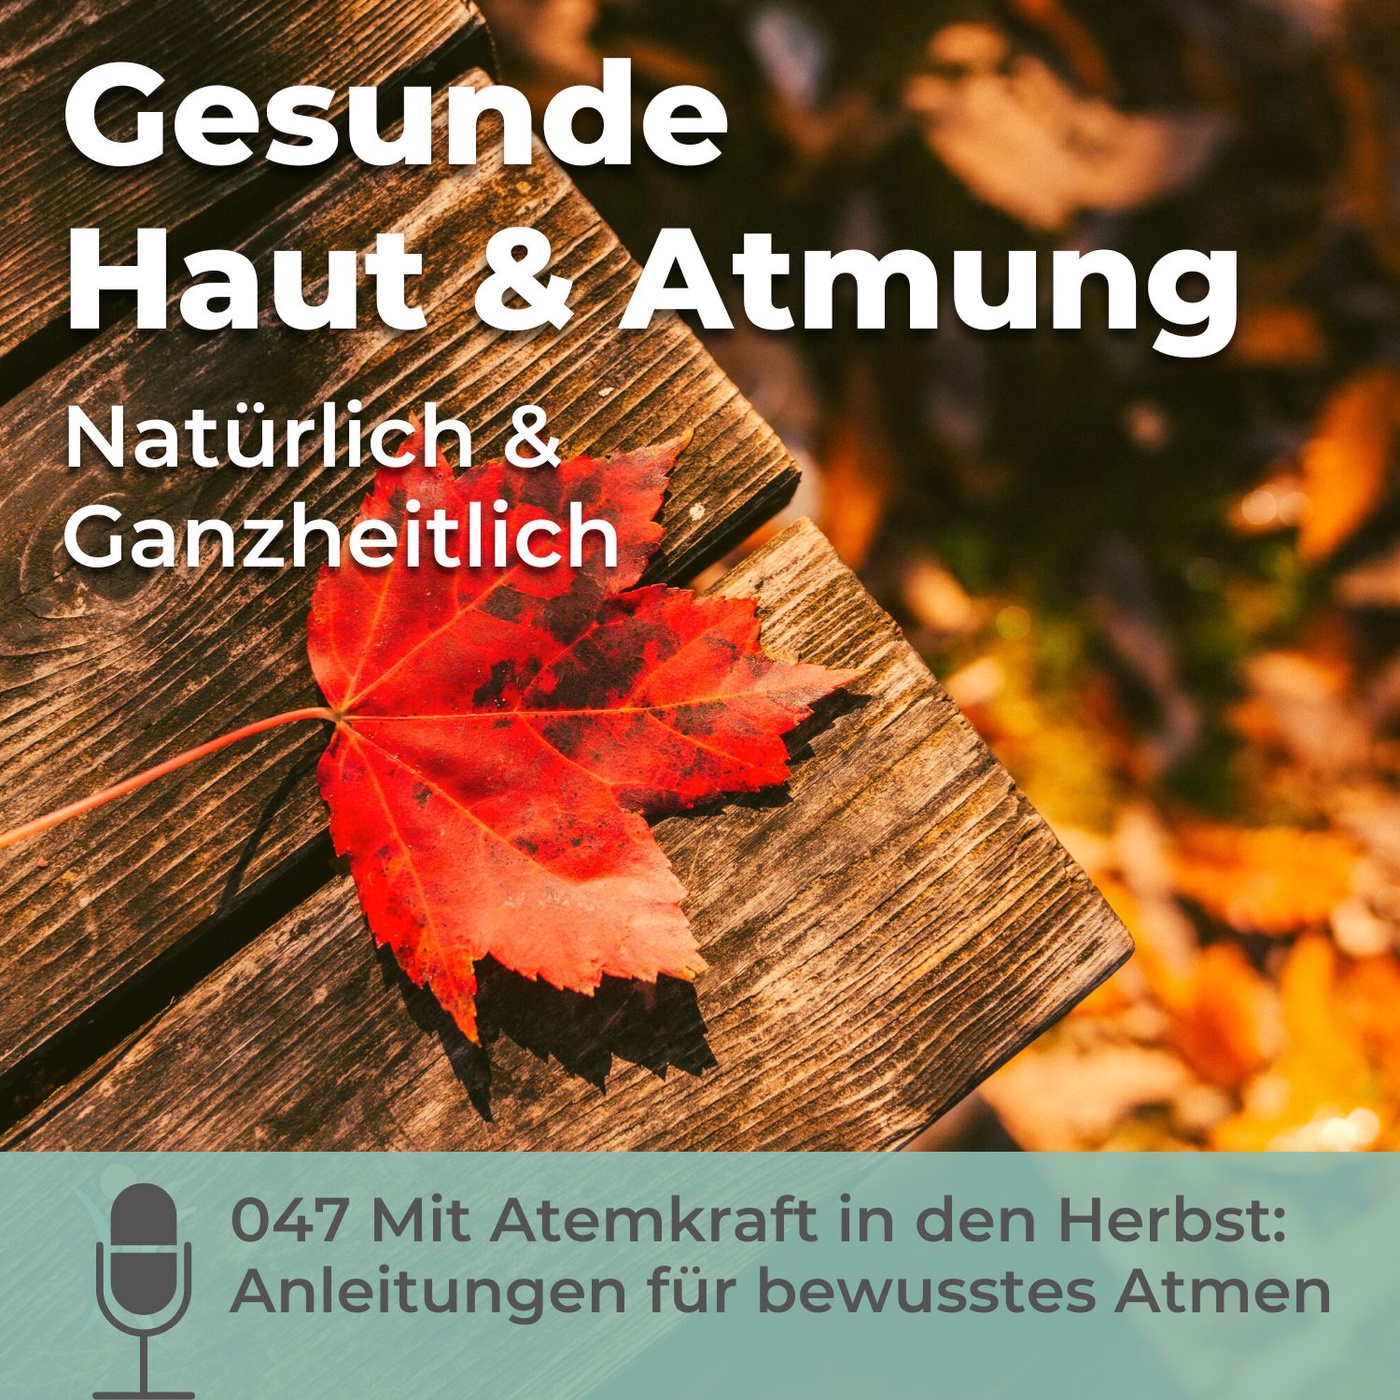 047 Mit Atemkraft in den Herbst: Anleitungen für bewusstes Atmen